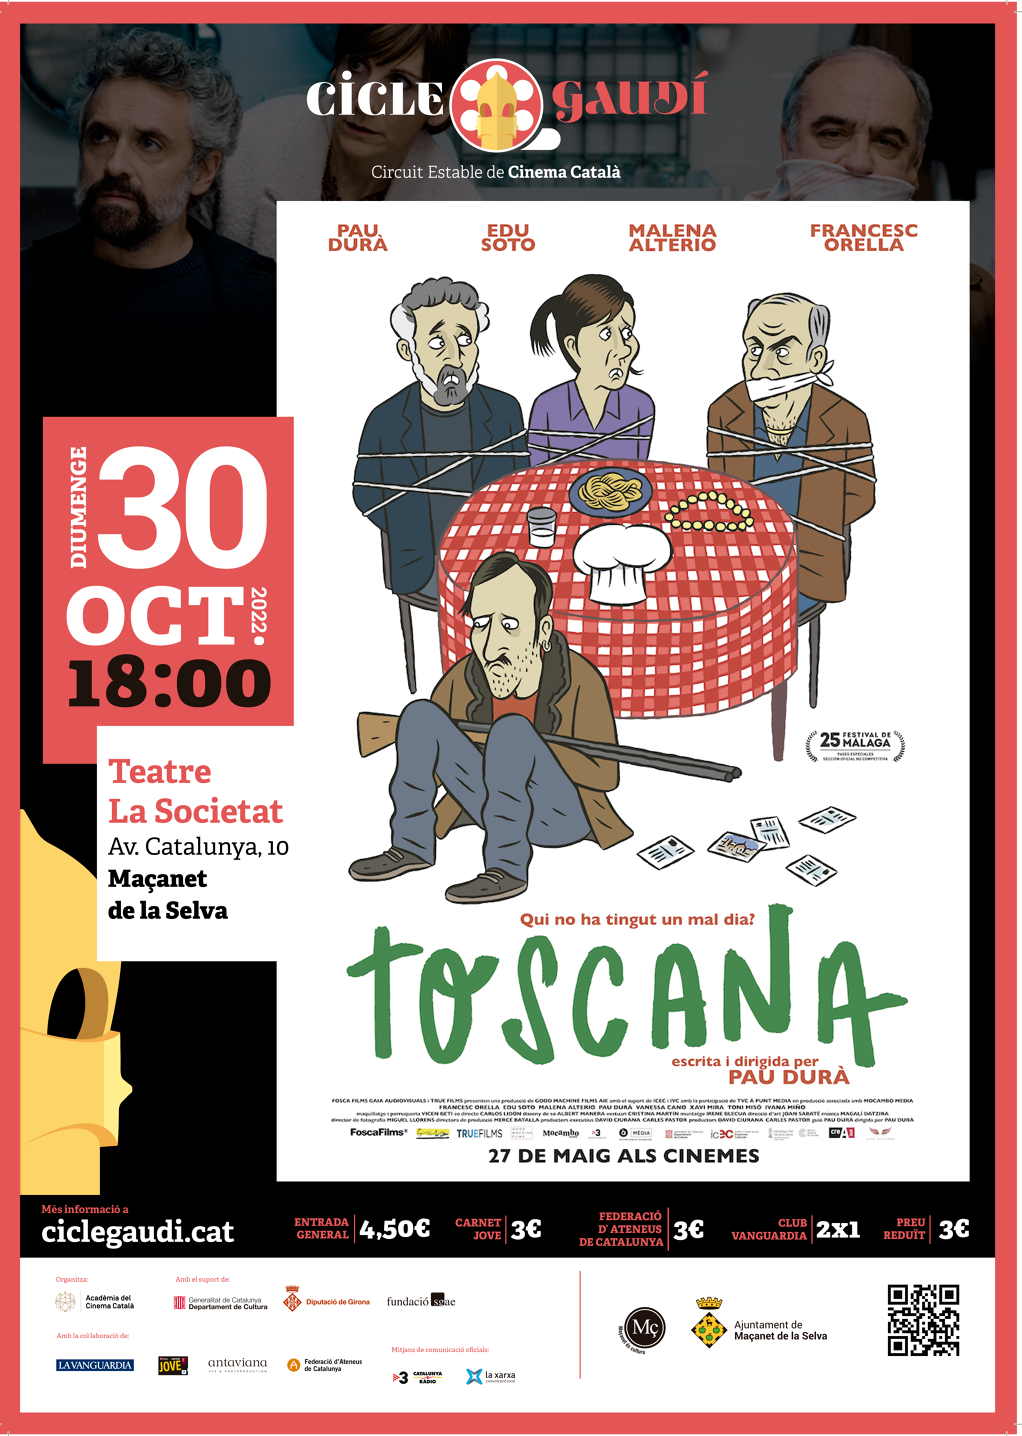 Toscana - 2a625-AAFF_A3_TOSCANA_MACANET_DE_LA_SELVA.png